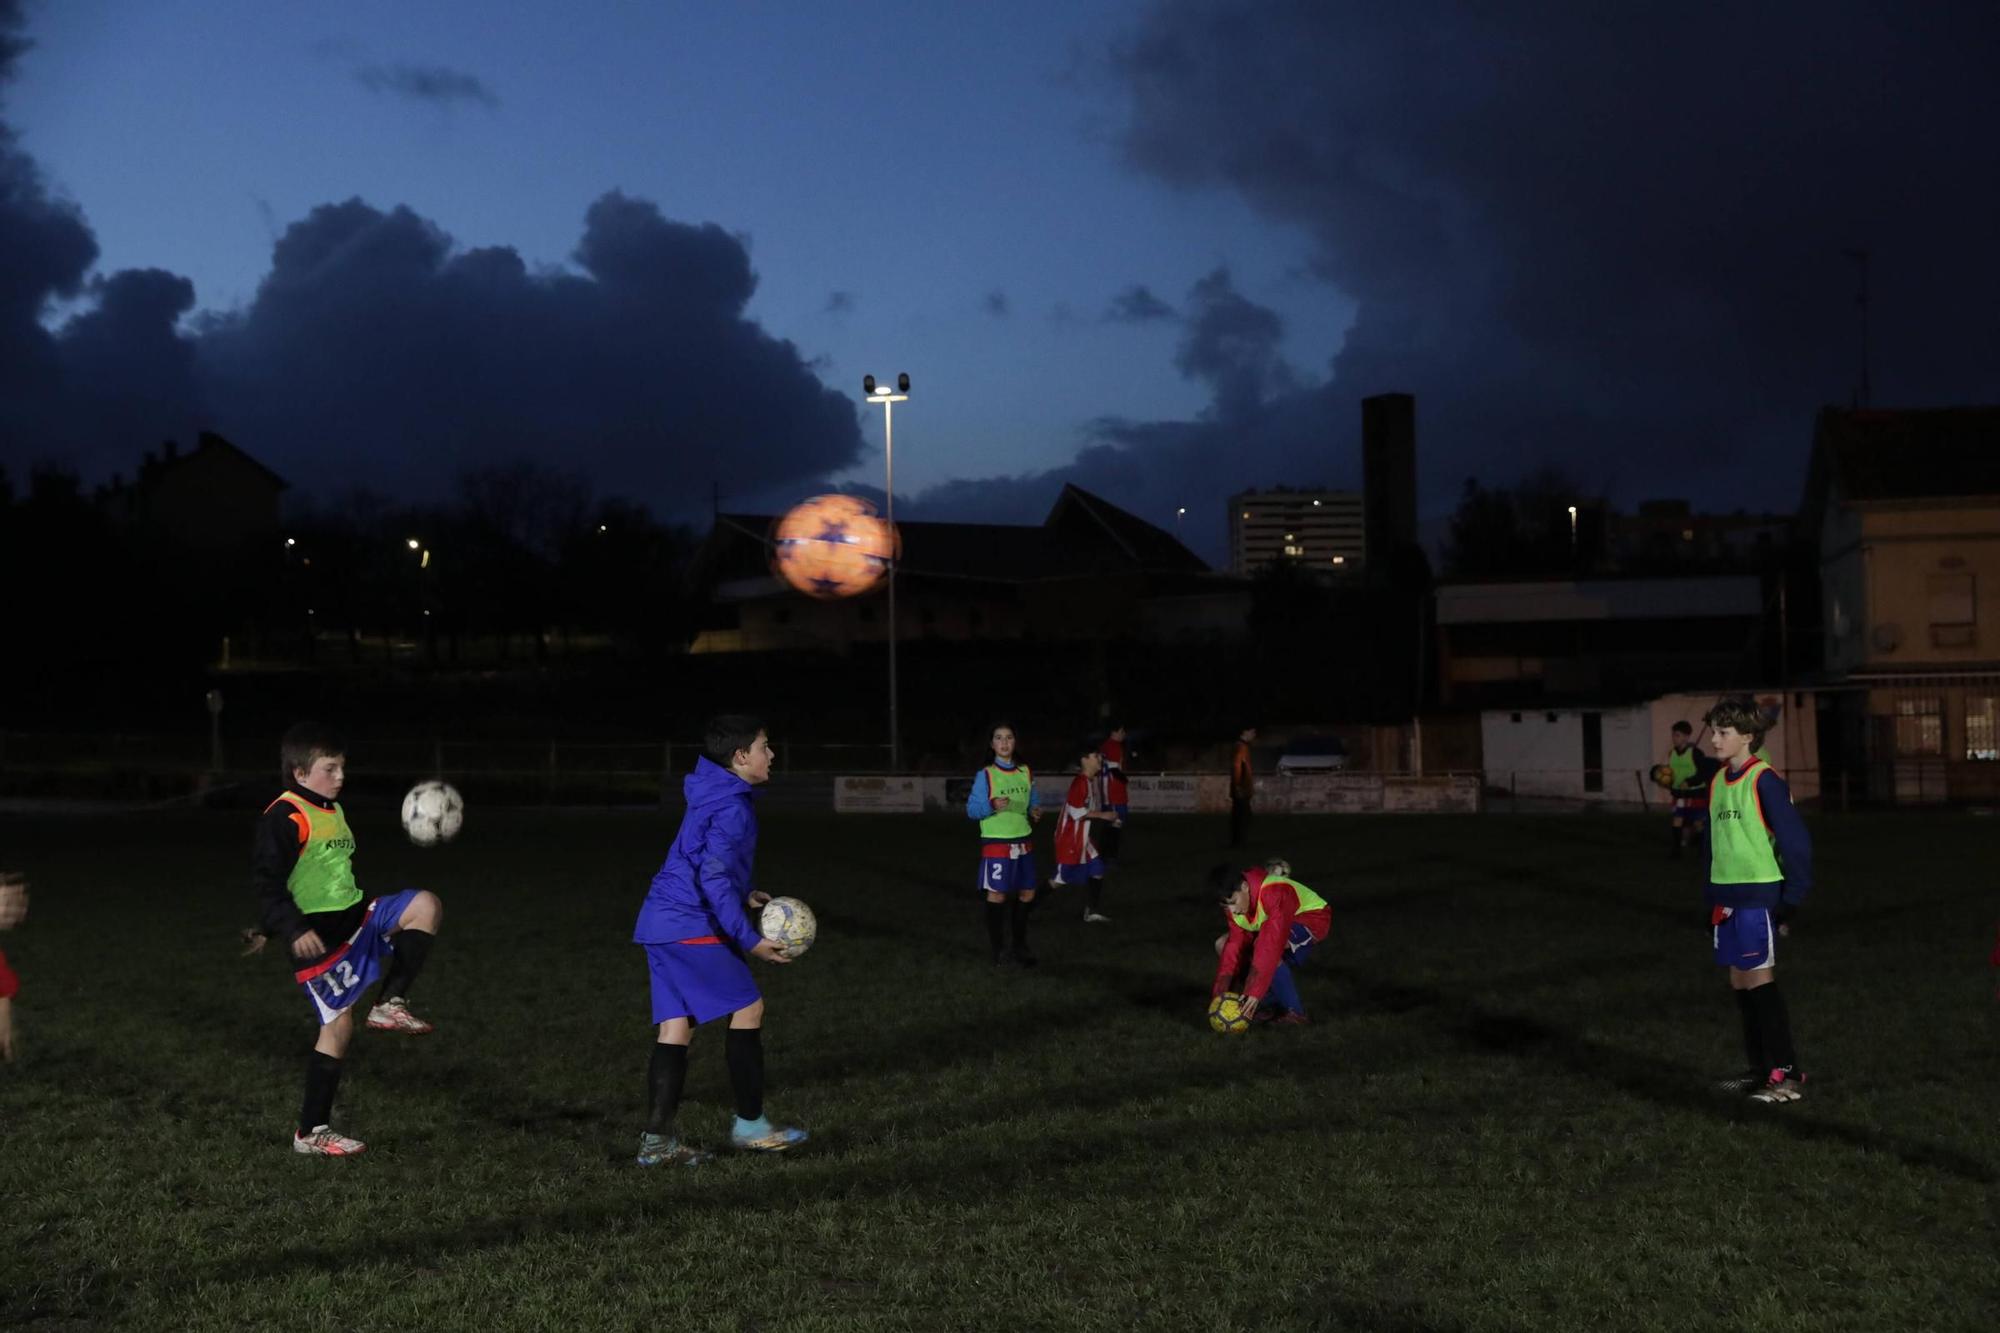 Condenados a jugar al fútbol casi a oscuras en Gijón (en imágenes)